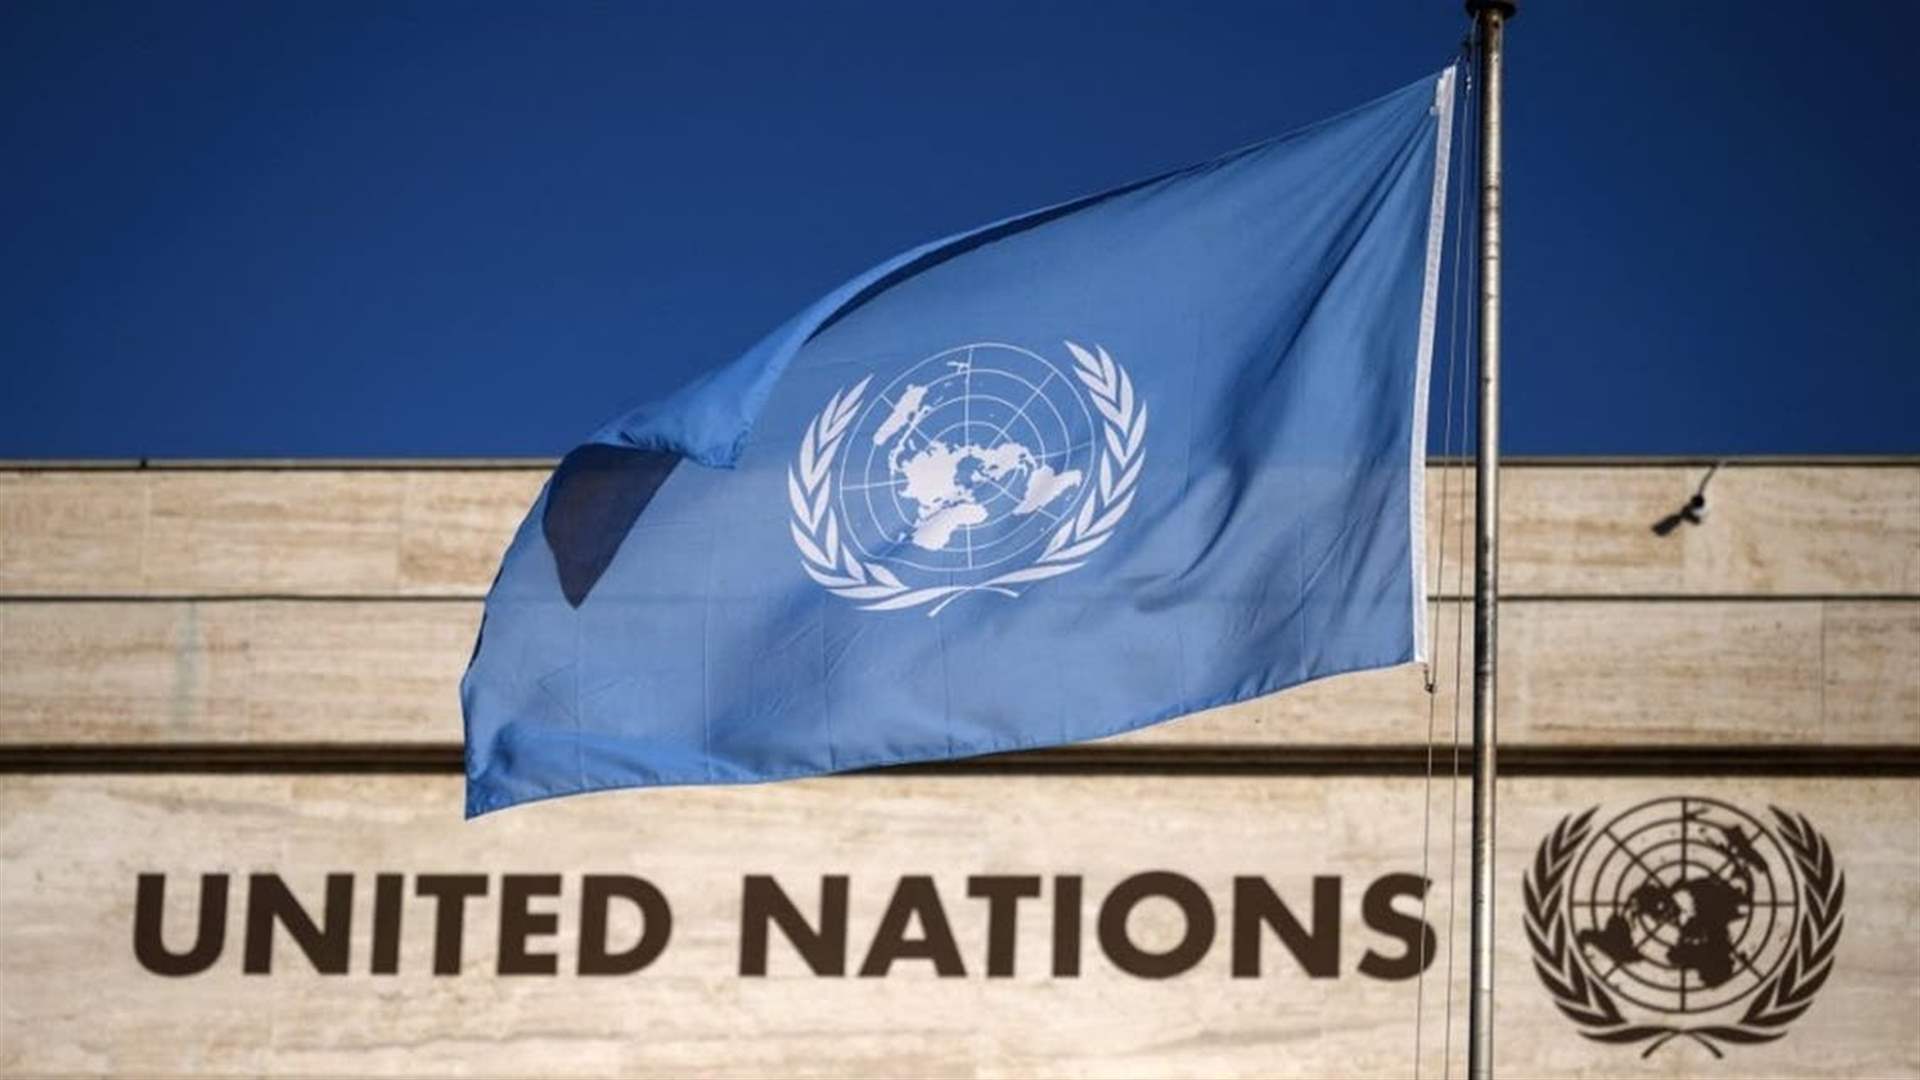 الأمم المتحدة تؤكد أن الحصار الكامل لقطاع غزّة &quot;محظور&quot; بموجب القانون الإنساني الدولي